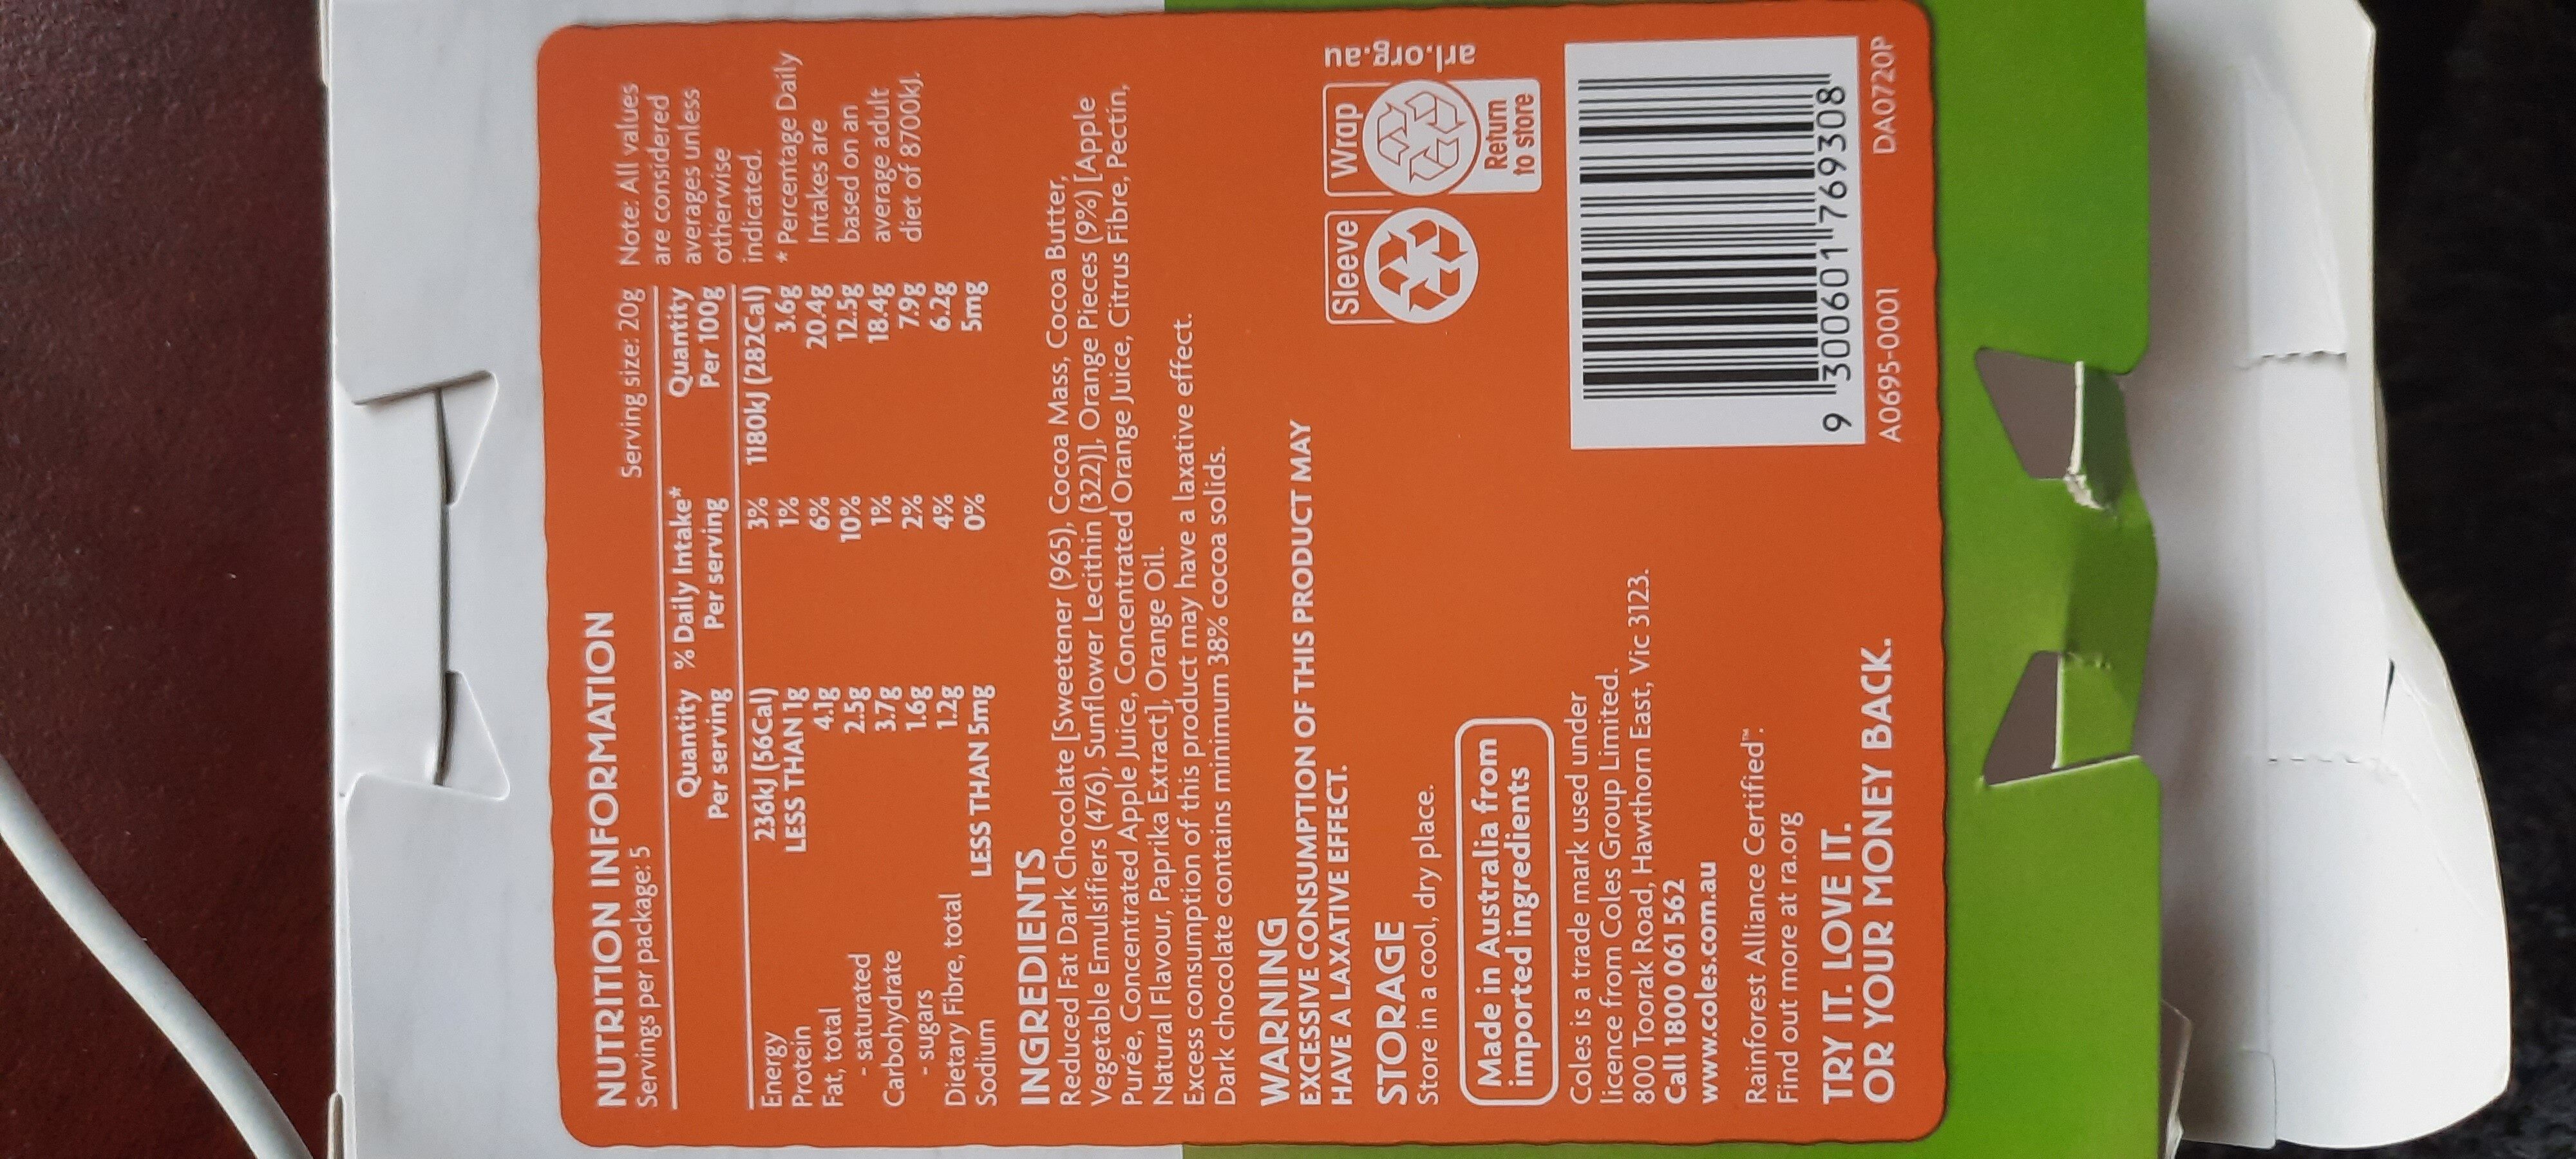 Orange dark choc no added sugar - Ingredients